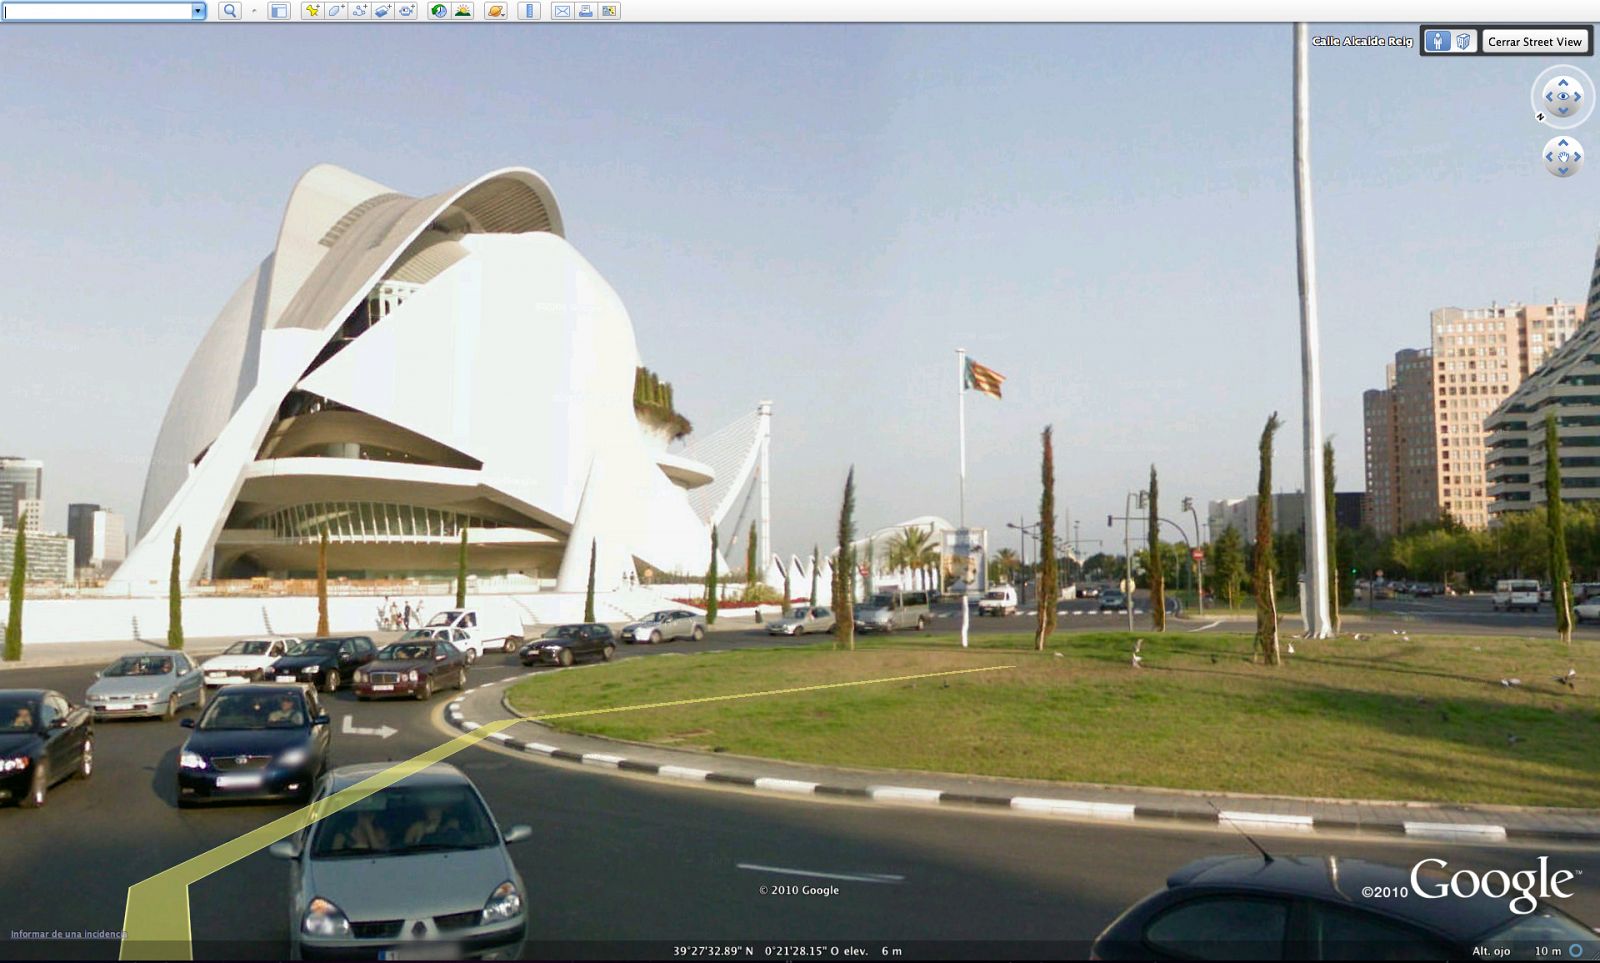 En Google Earth 6 la función Street View funciona de forma casi idéntica a como lo hace en Google Maps